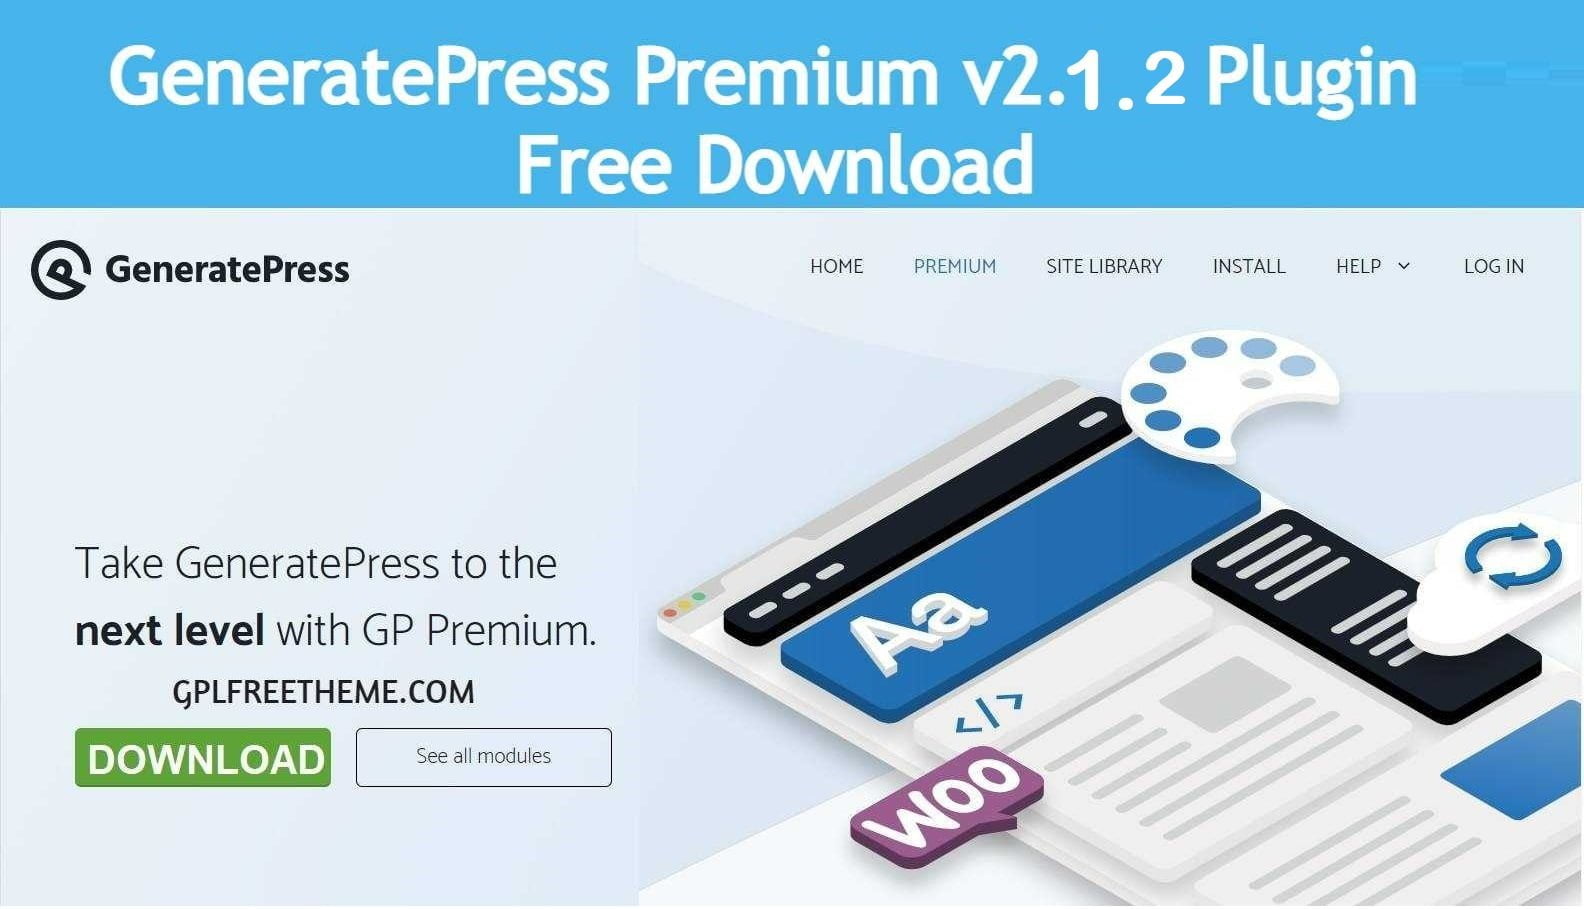 GP Premium v2.1.2 - Plugin Free Download [Activated]